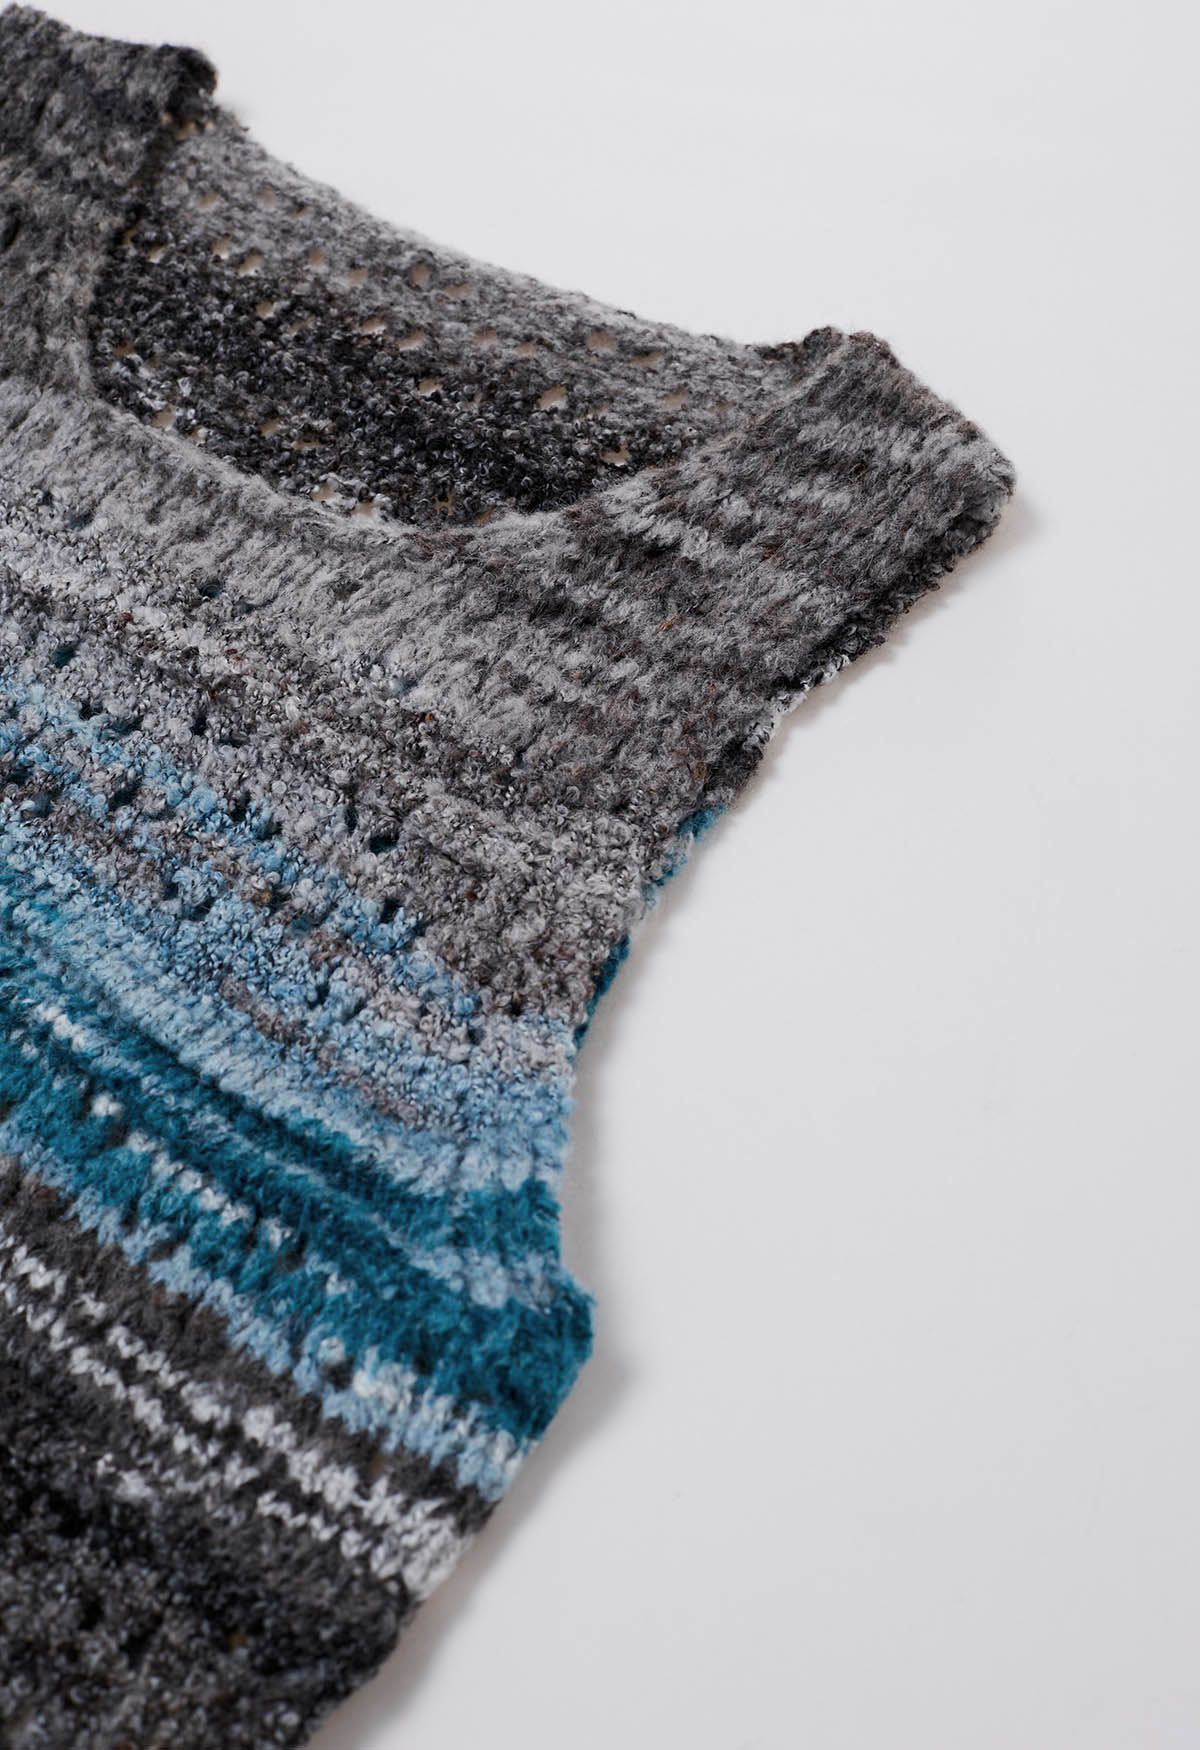 Gilet en tricot ajouré à rayures multicolores en bleu